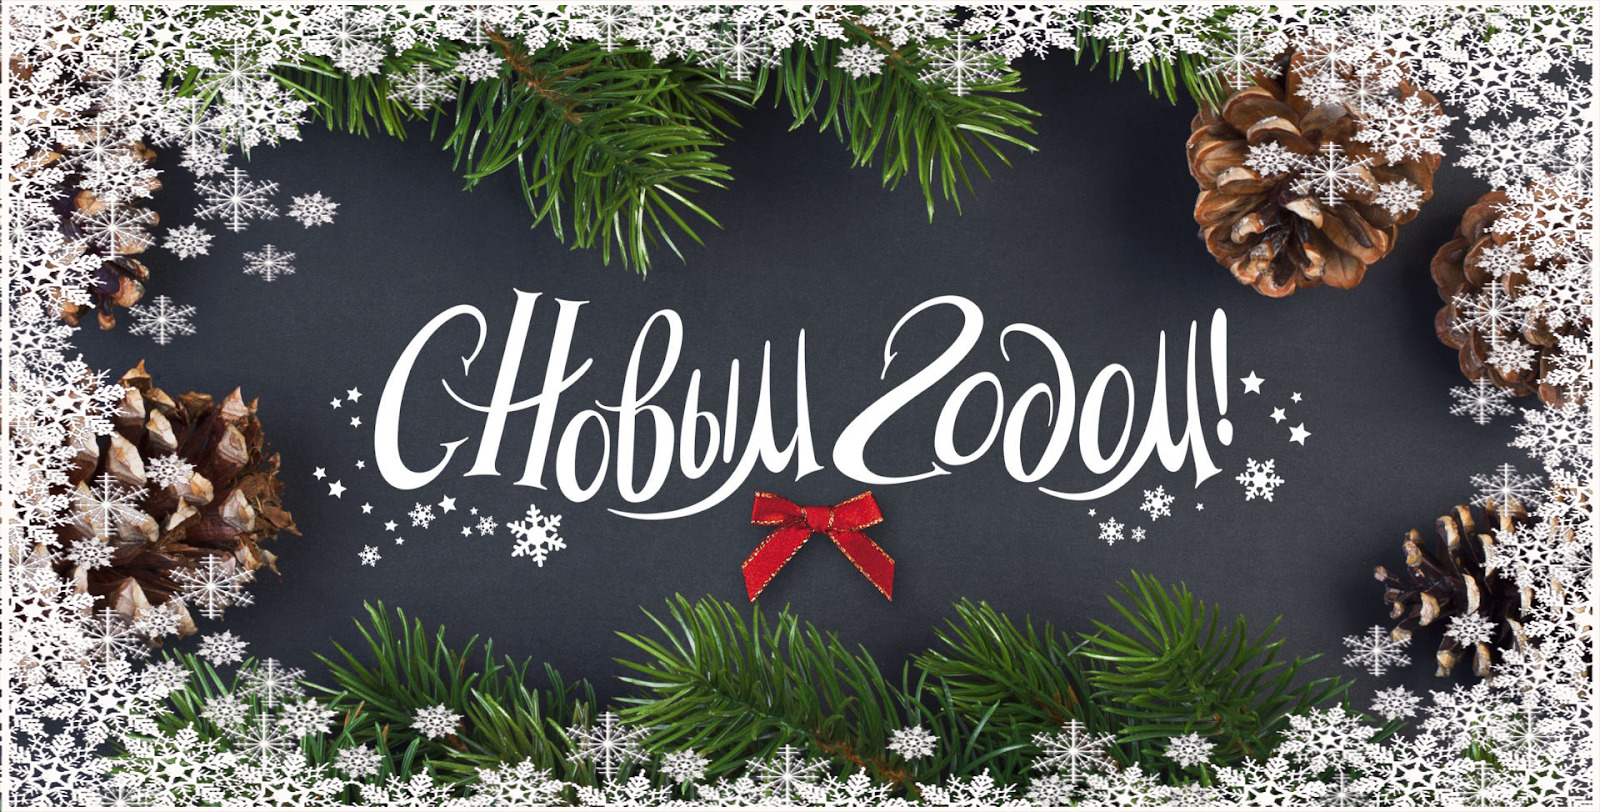 Поздравление С Новым годом от председателя Могилевского областного исполнительного комитета Анатолия Исаченко